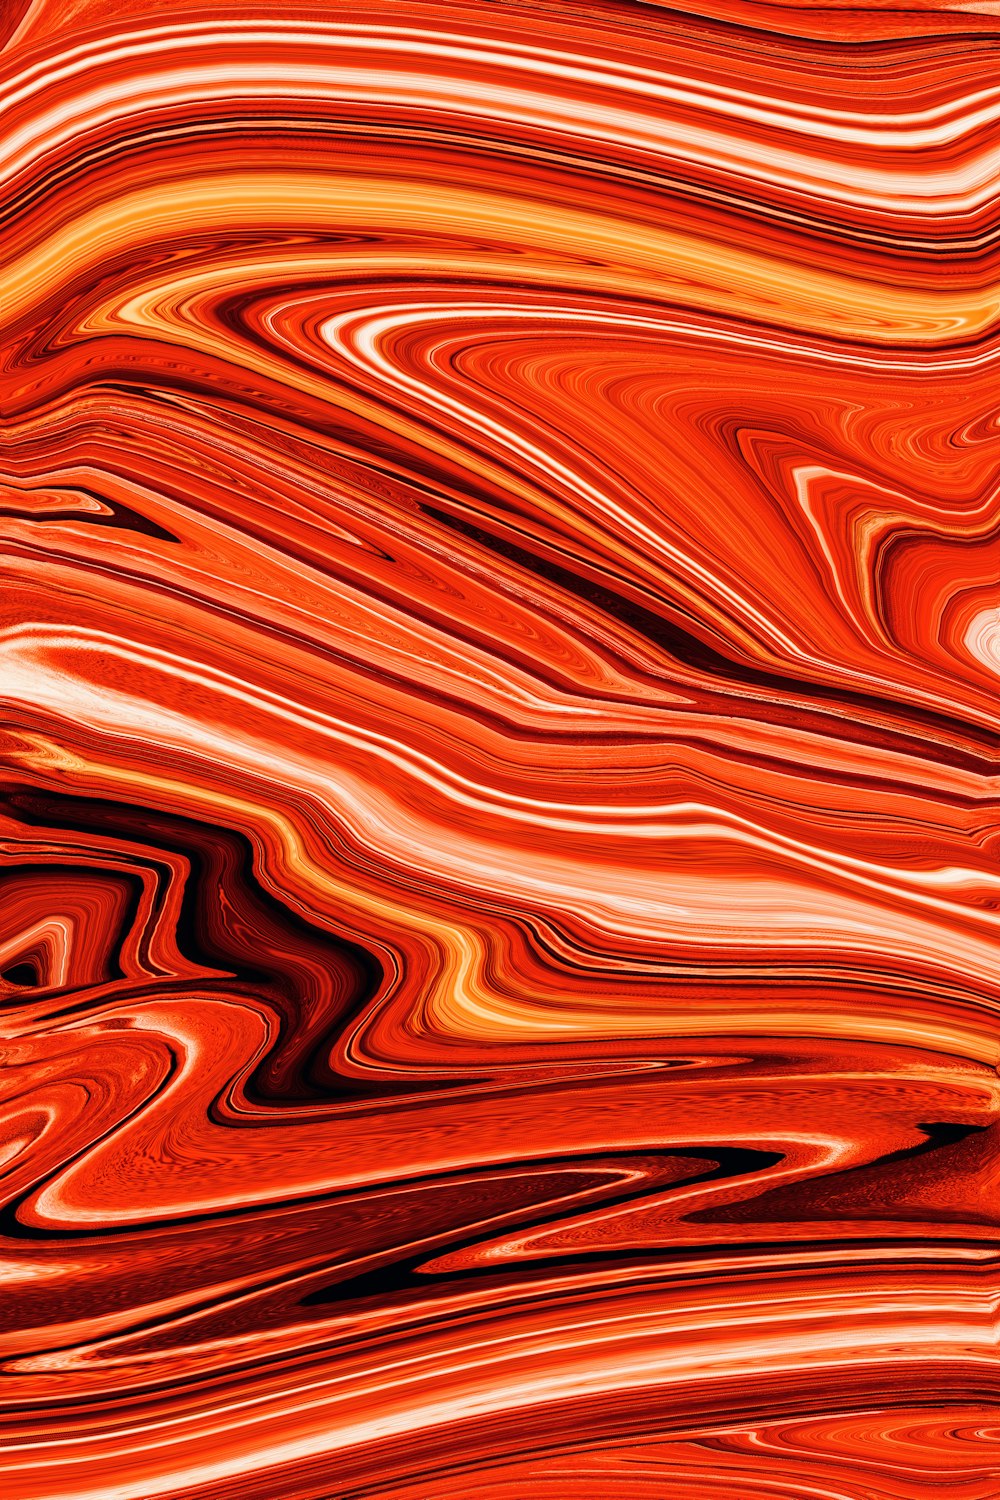 un fondo naranja y rojo con un diseño ondulado